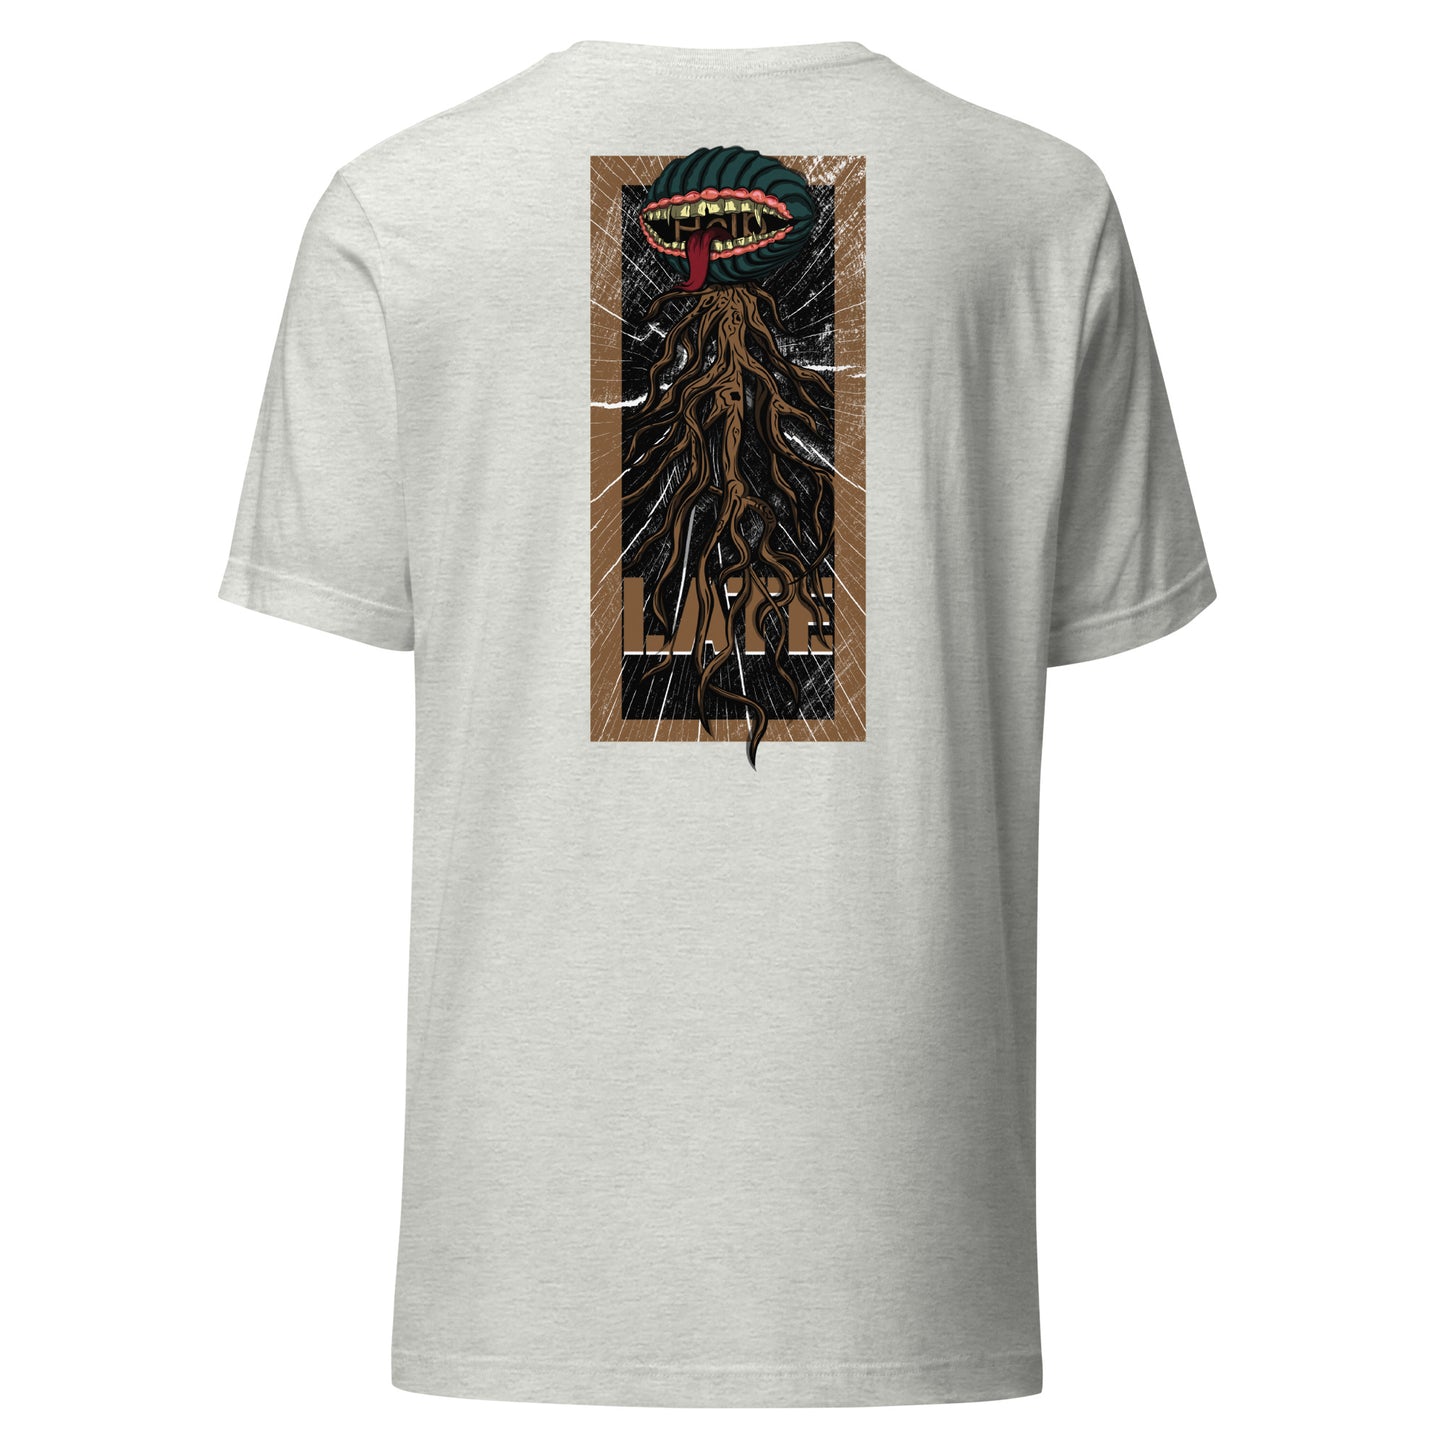 T-shirt style santacruz skateboarding plante carnivore effet bois tshirt unisex dos couleur gris